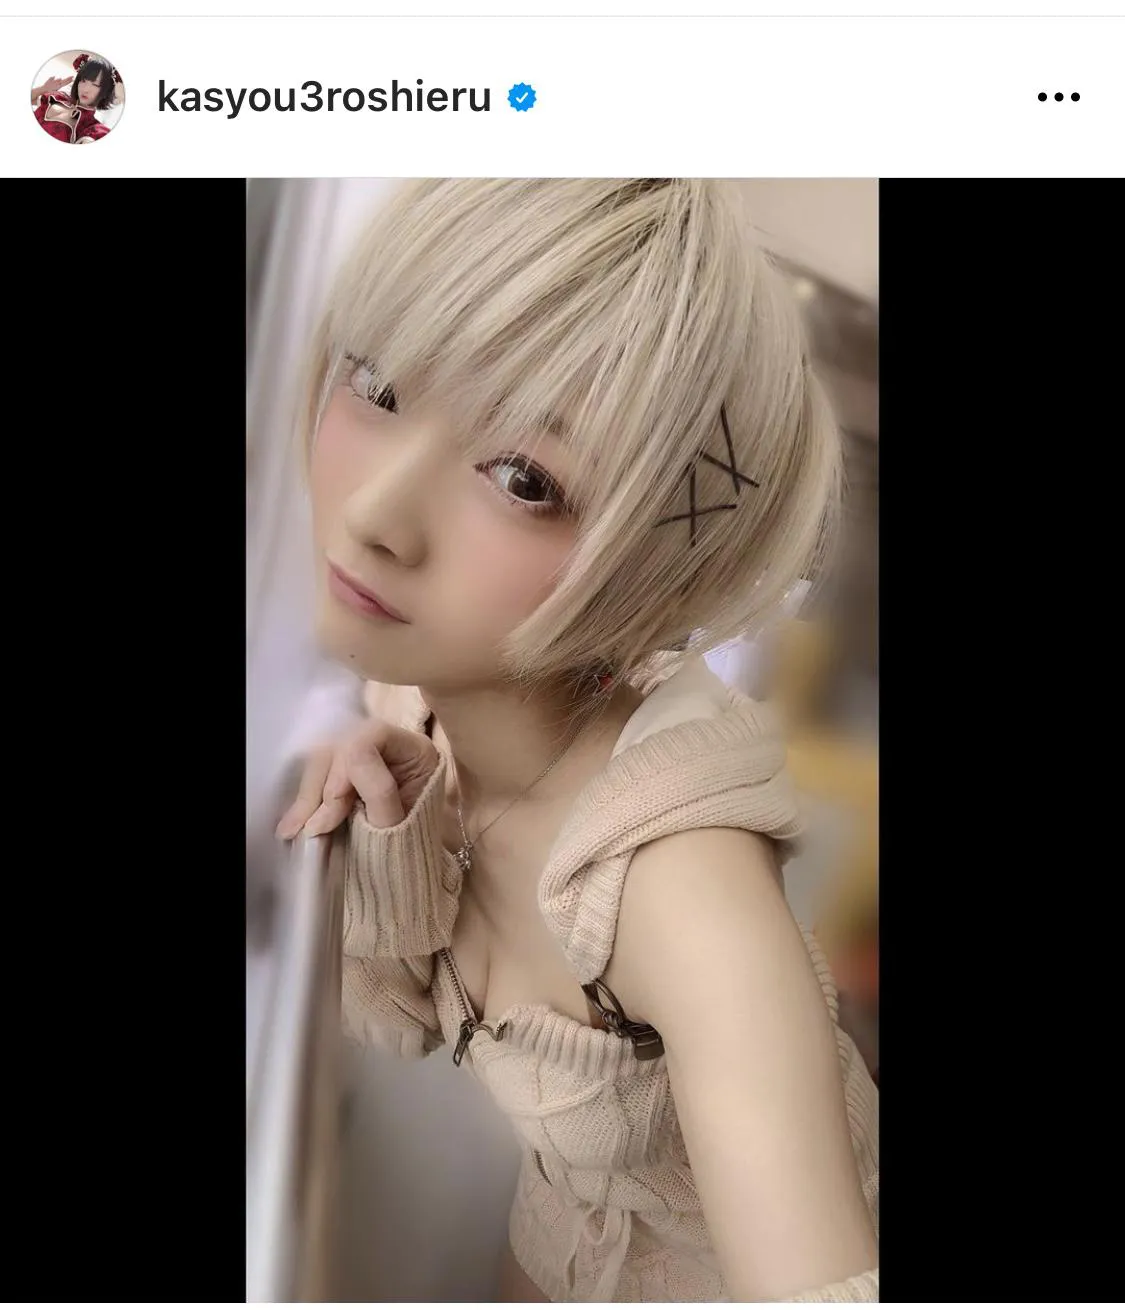 ※火将ロシエル公式Instagram(kasyou3roshieru)のスクリーンショット